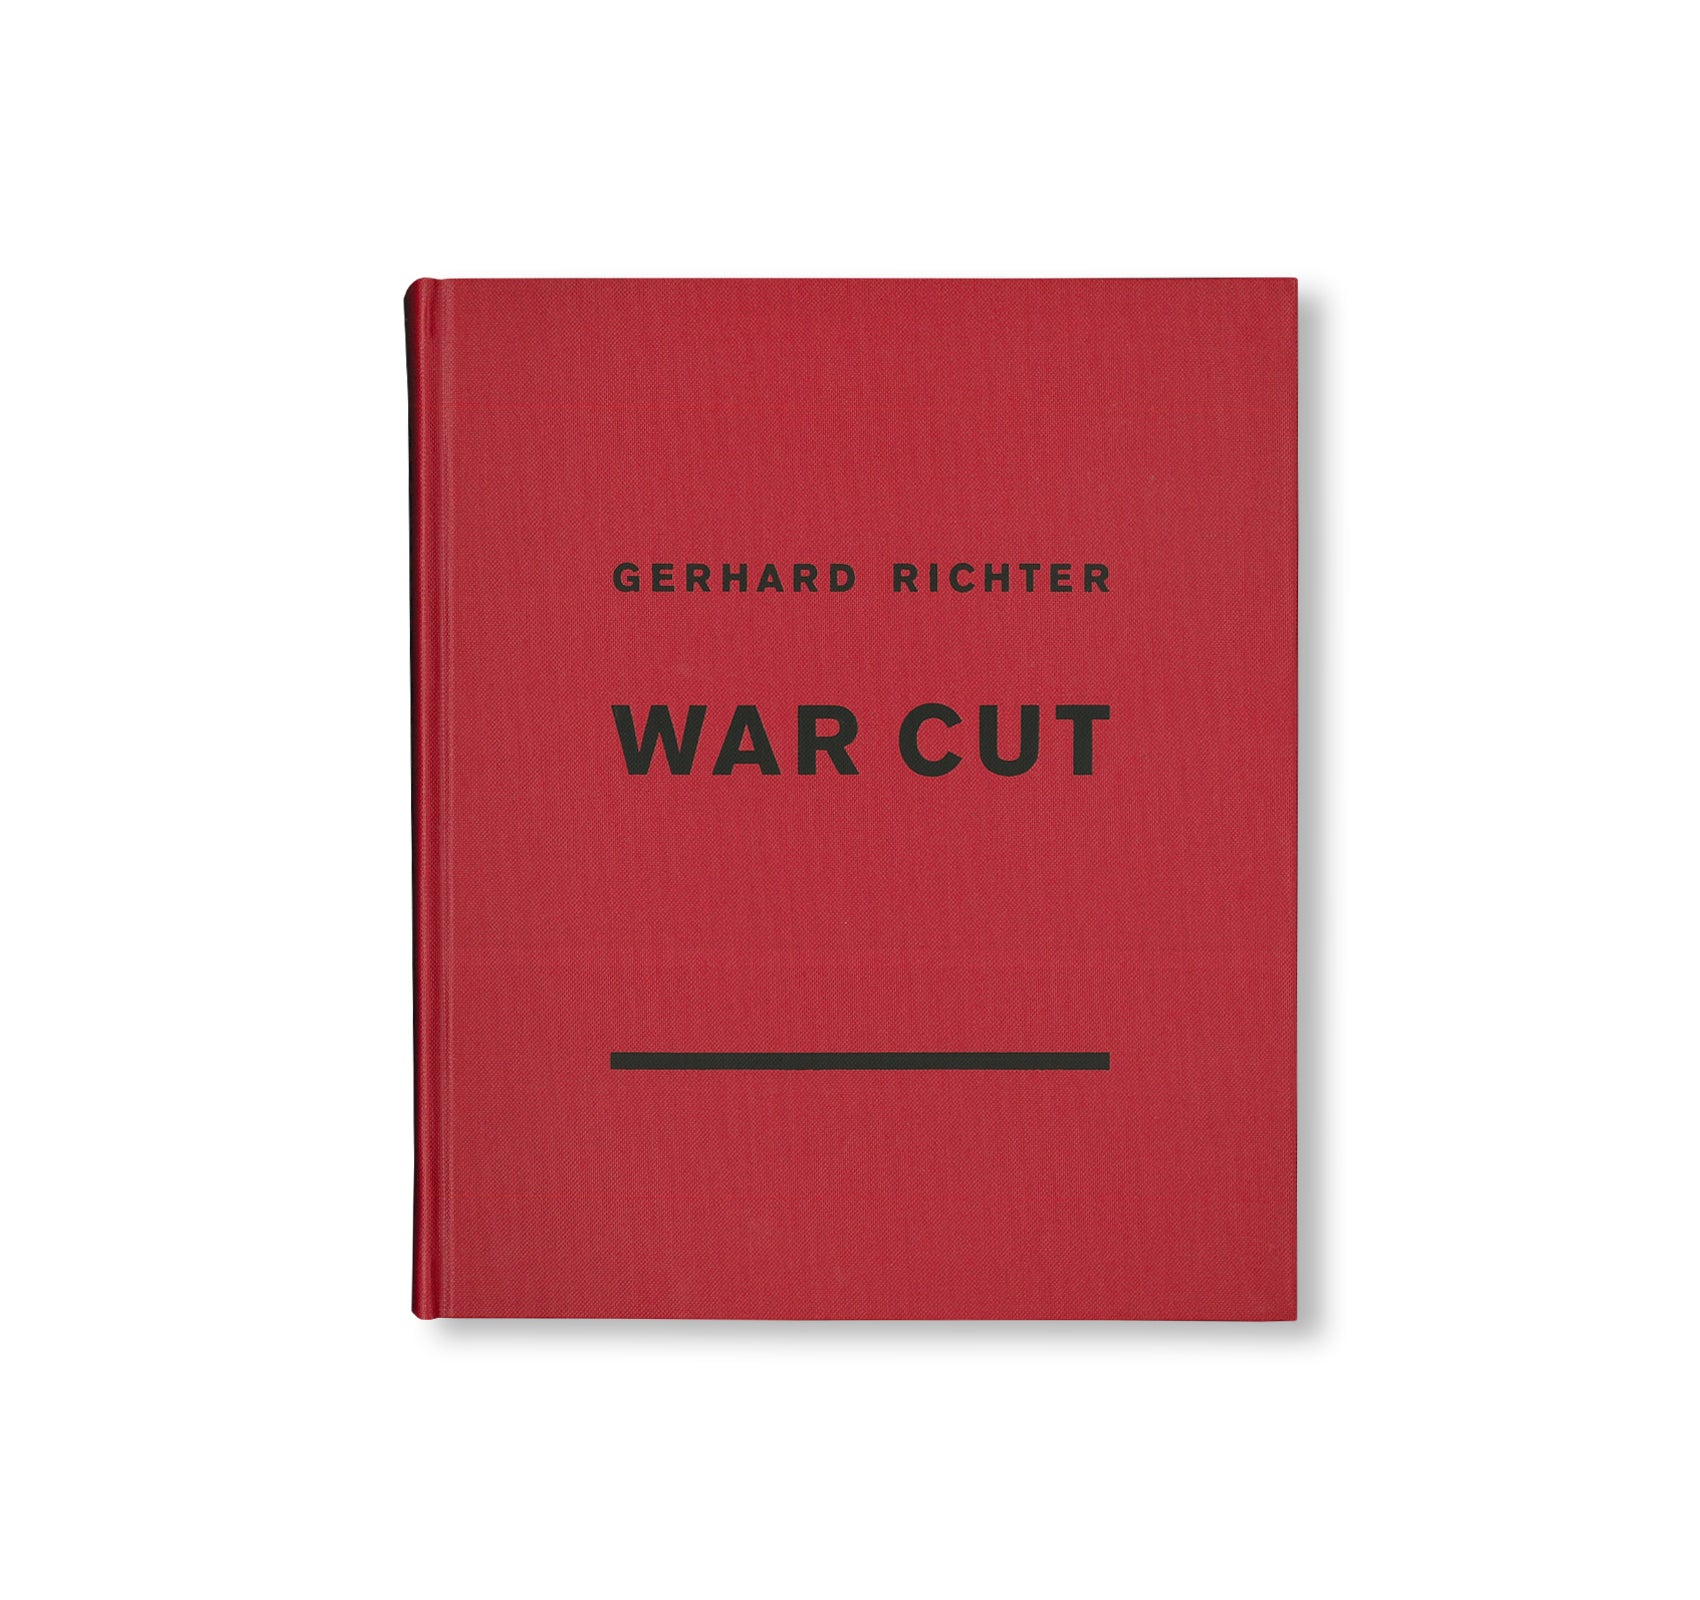 WAR CUT by Gerhard Richter